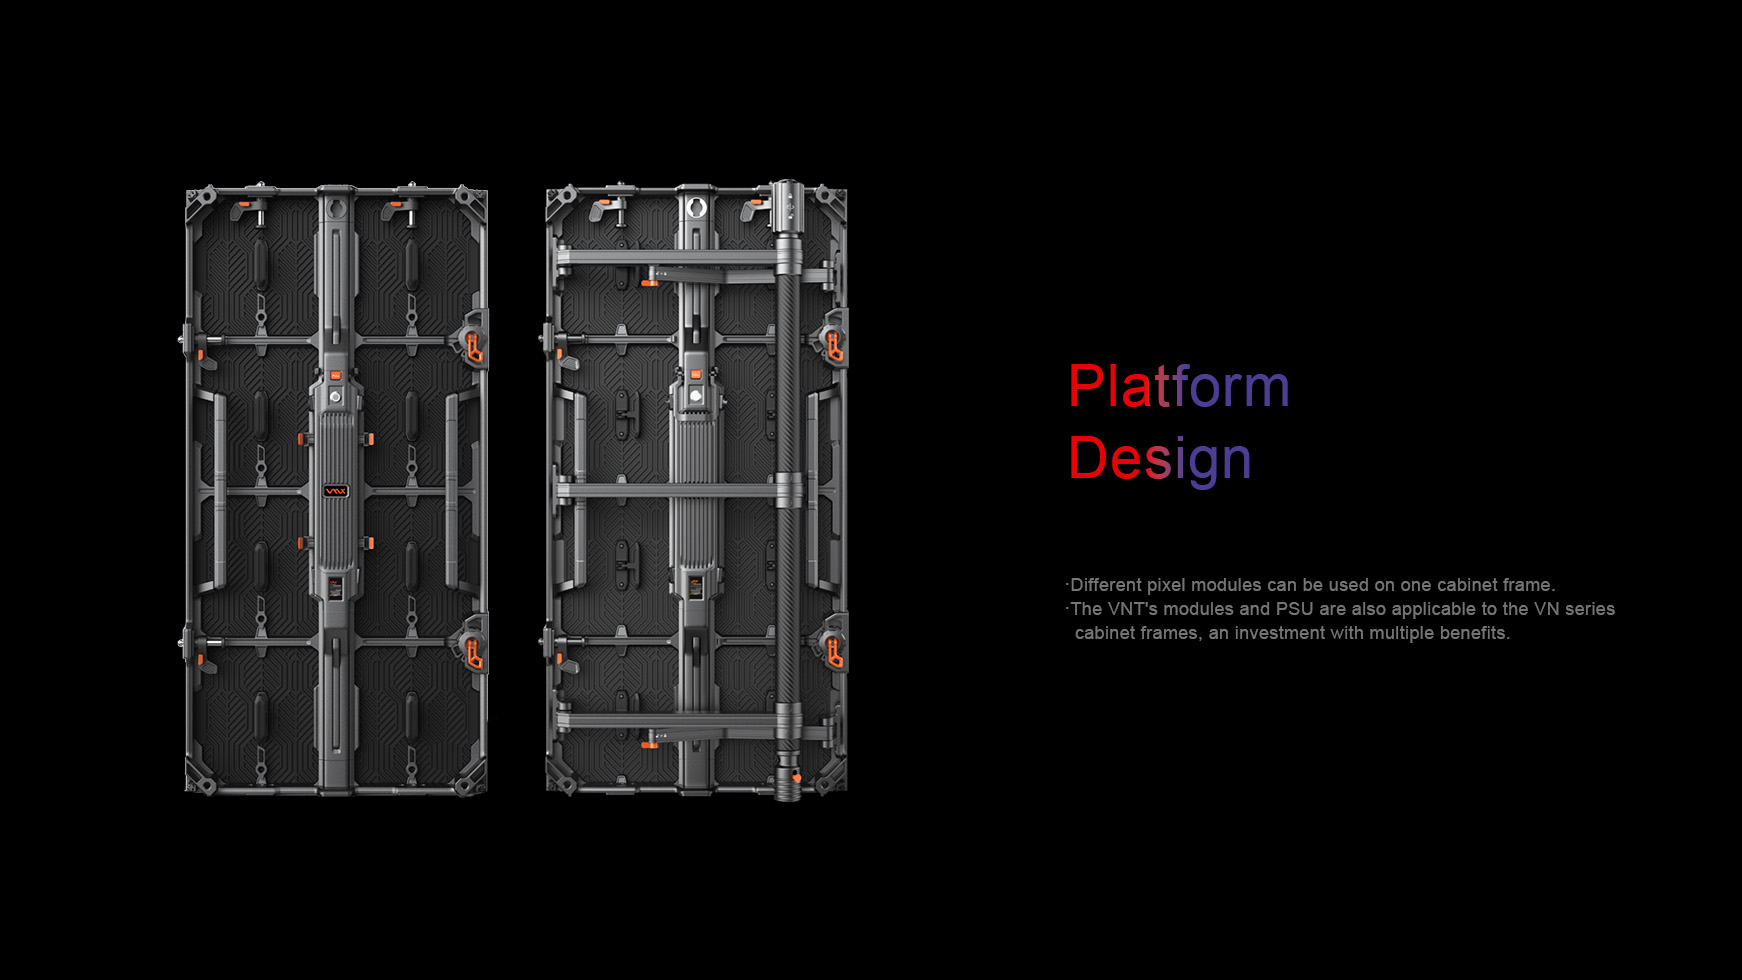 Platform Design